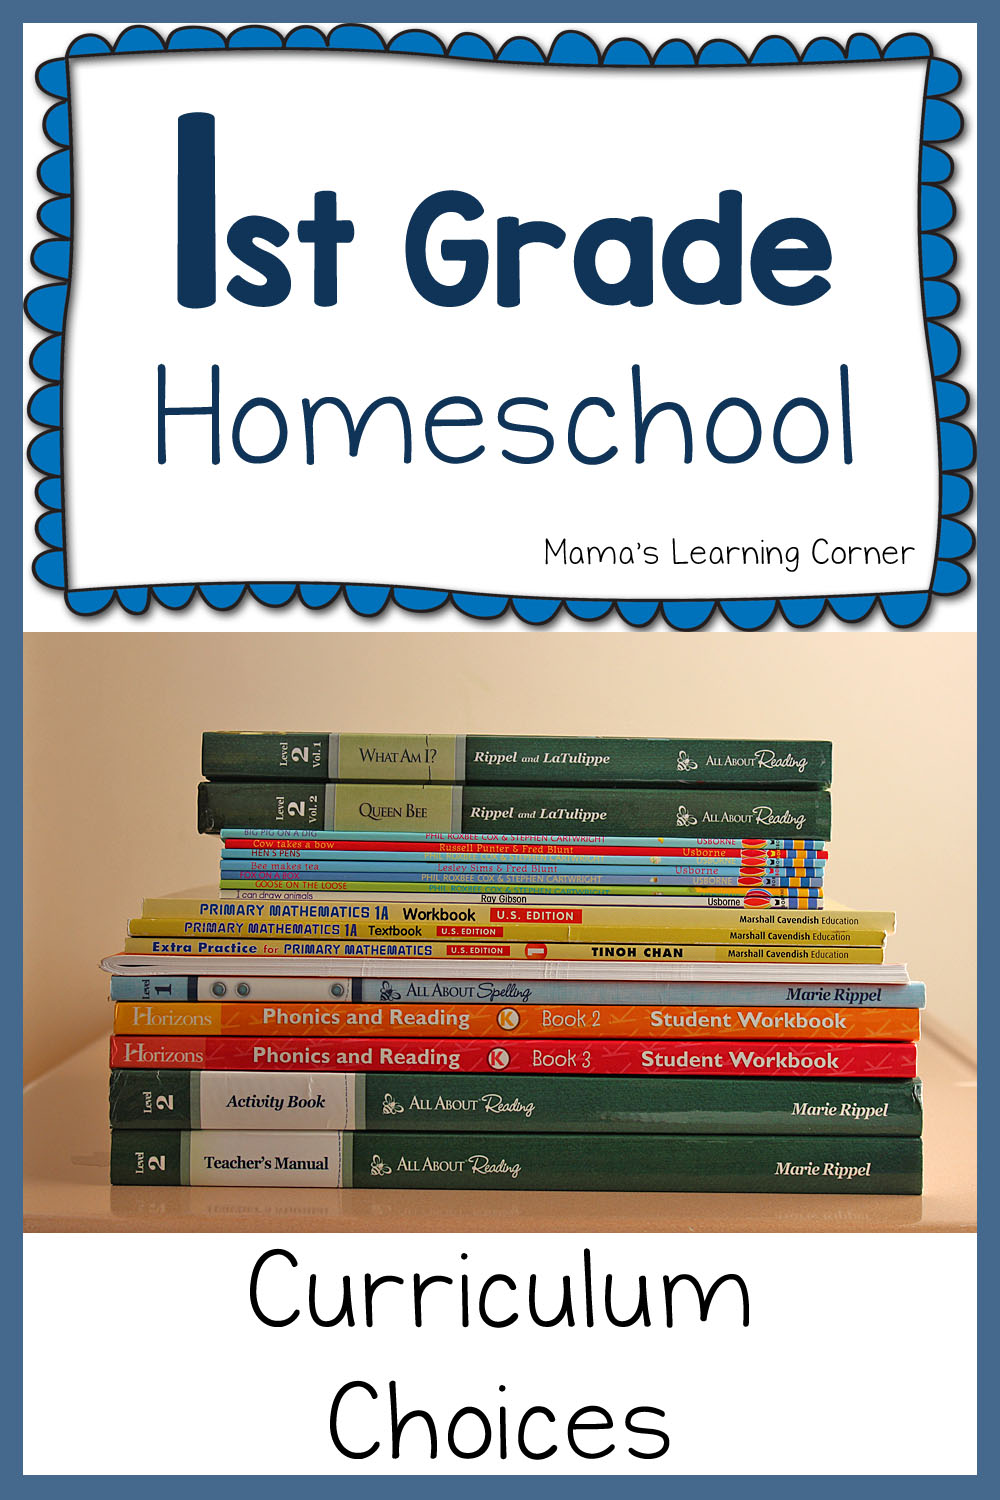 1st Grade Curriculum Plans 2015 2016 - Homeschool Kindergarten Curriculum